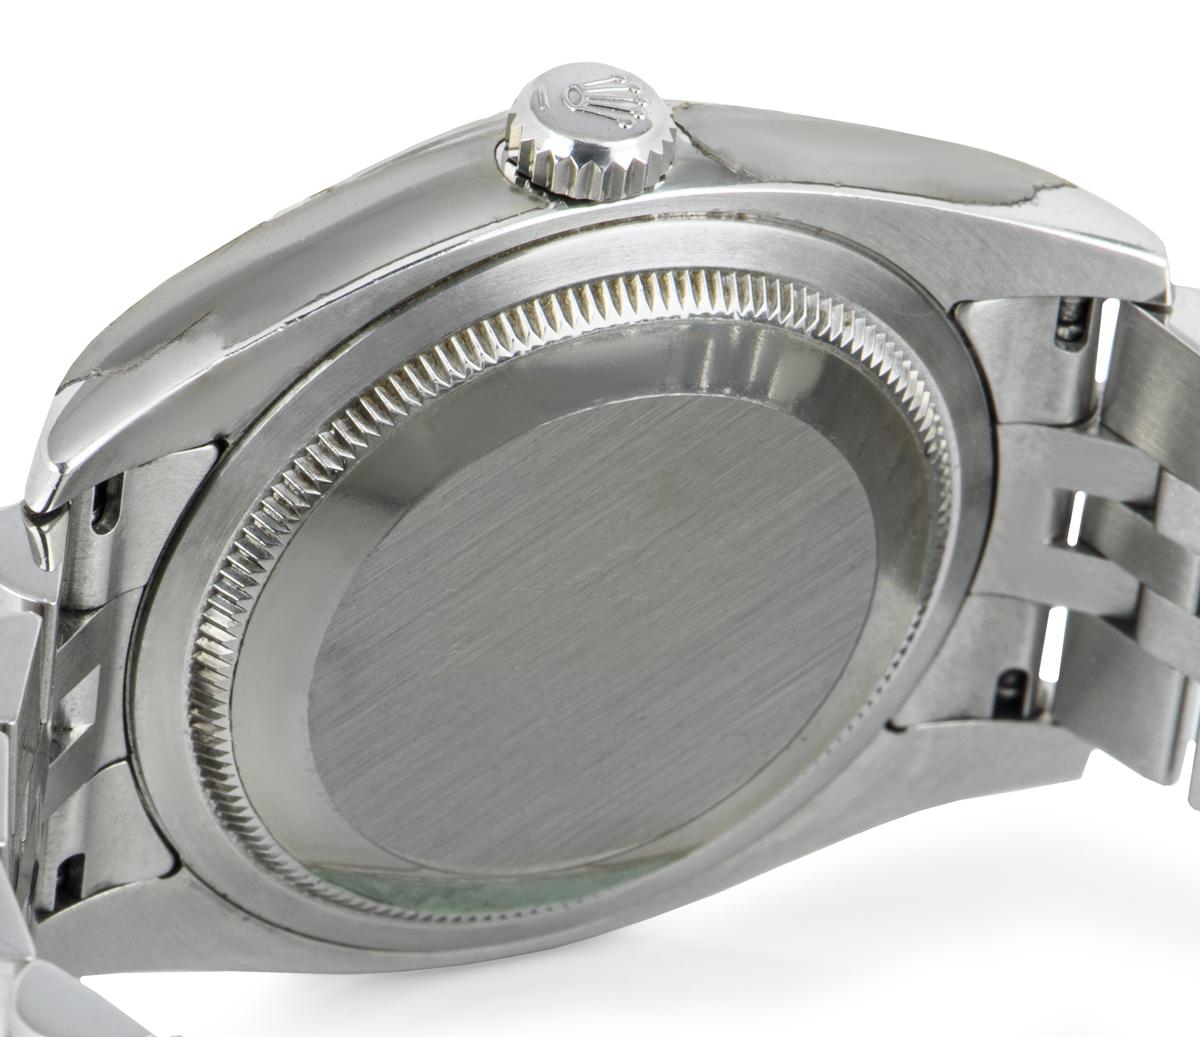 Unworn Rolex Datejust NOS 116234 Stainless Steel Watch 3